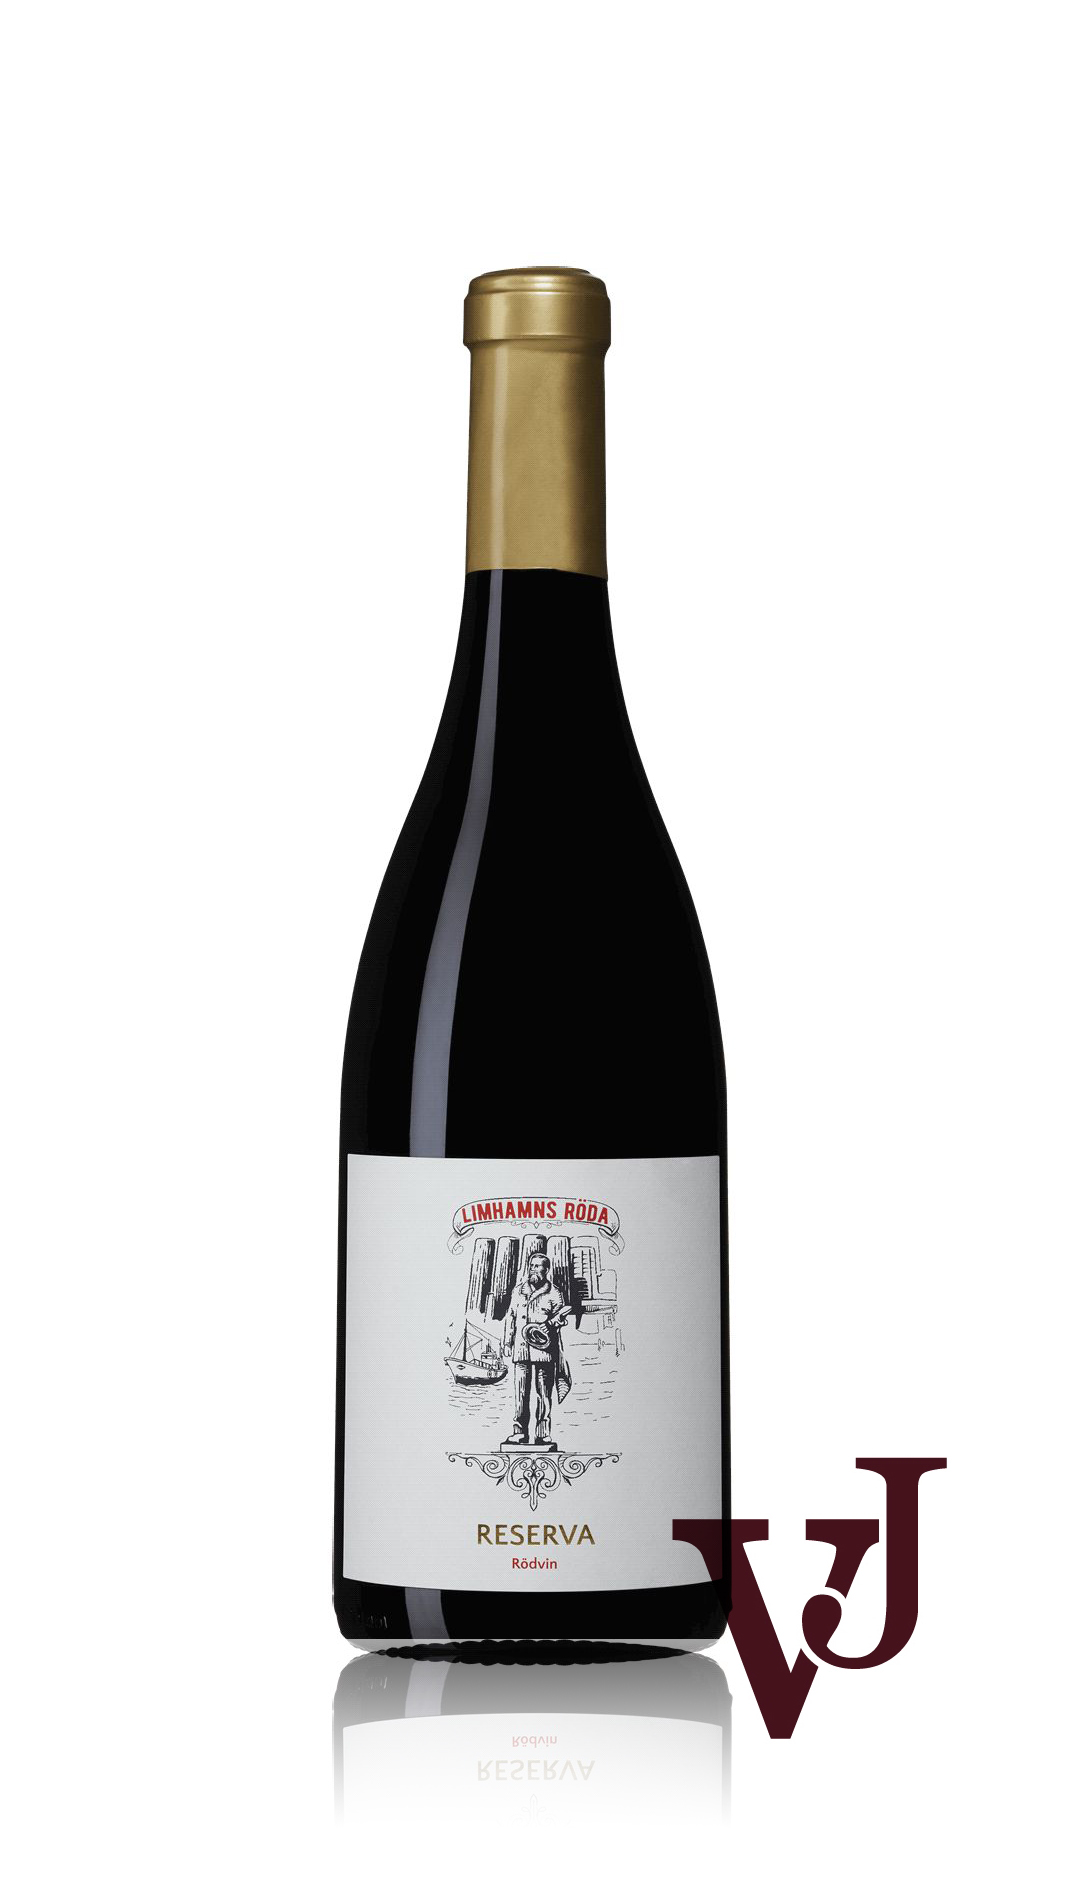 Rött Vin - Limhamns Röda artikel nummer 7275901 från producenten Familia Margaca från Portugal.